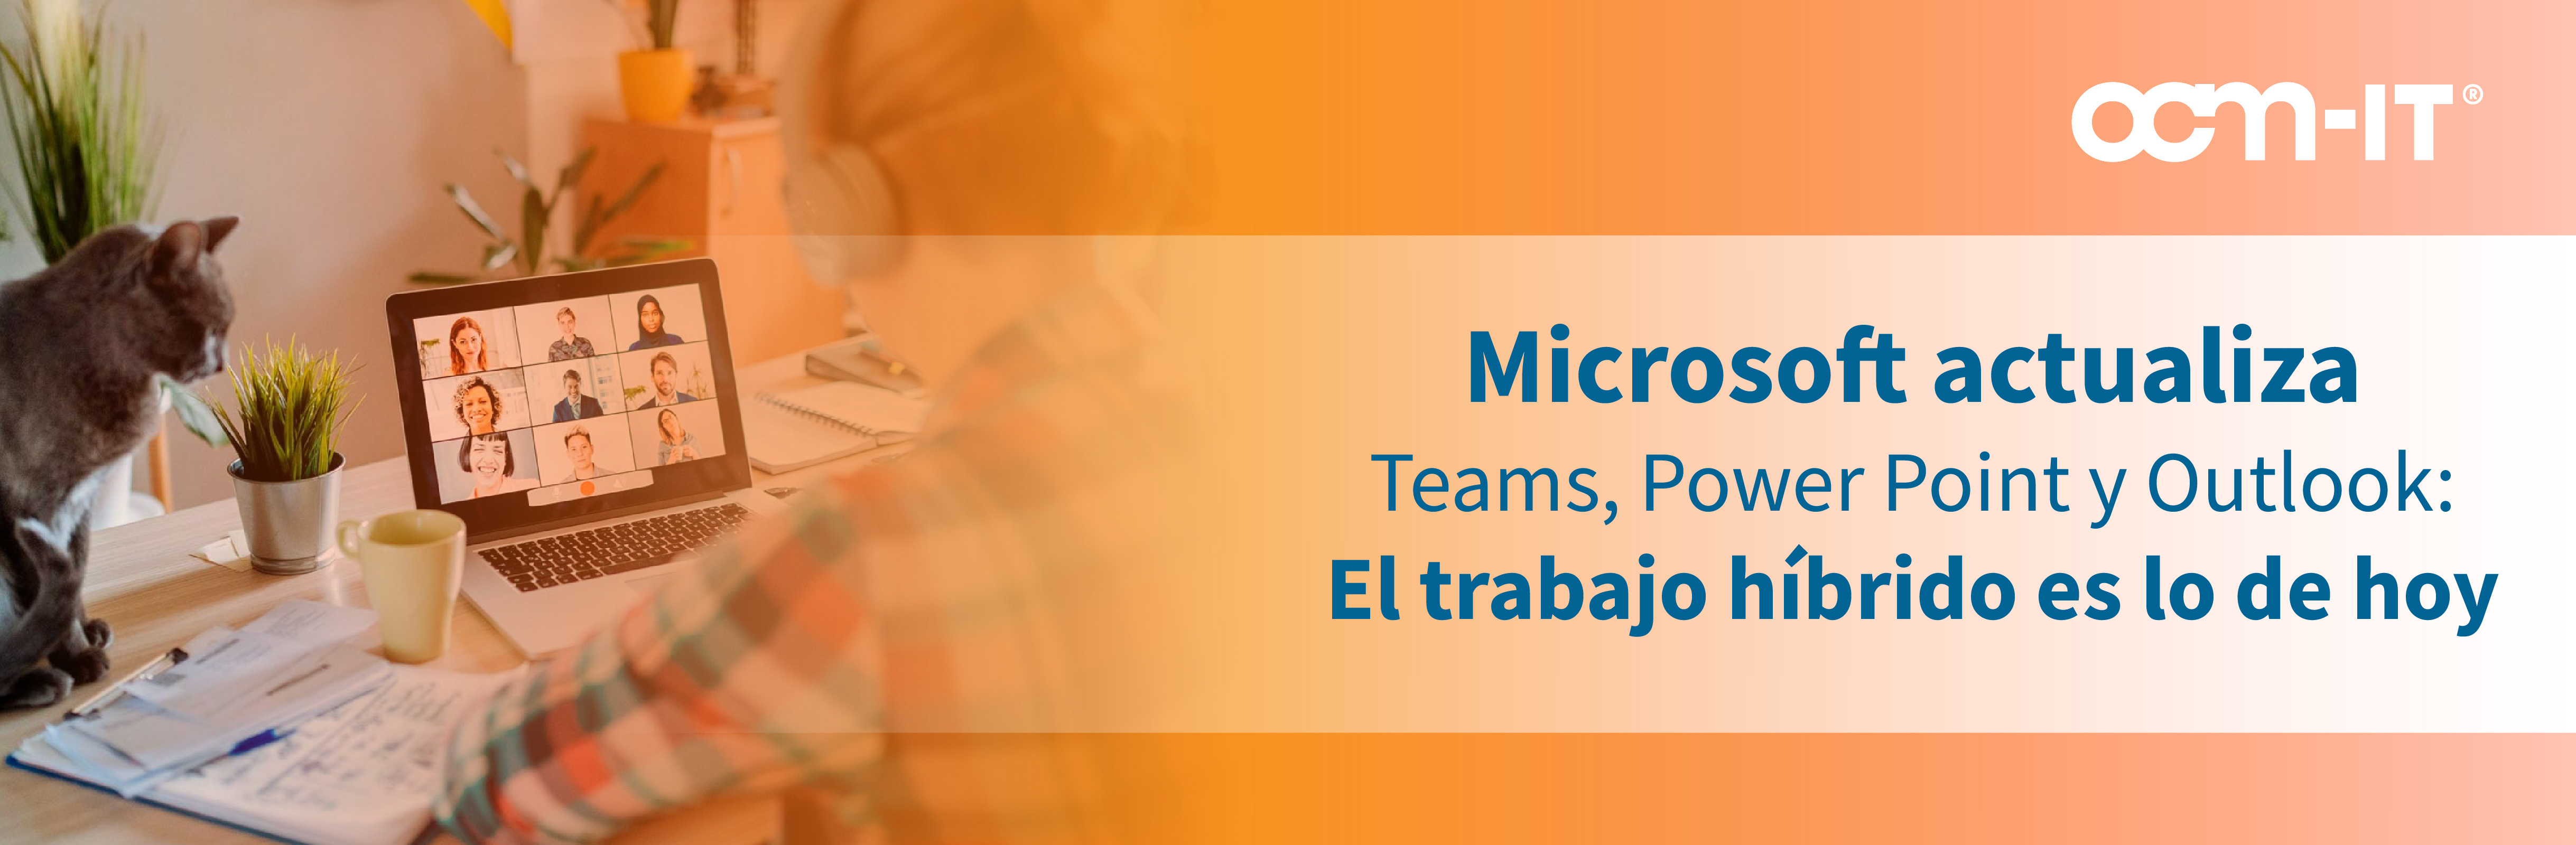 Microsoft actualiza Teams, Power Point y Outlook: El trabajo híbrido es lo de hoy